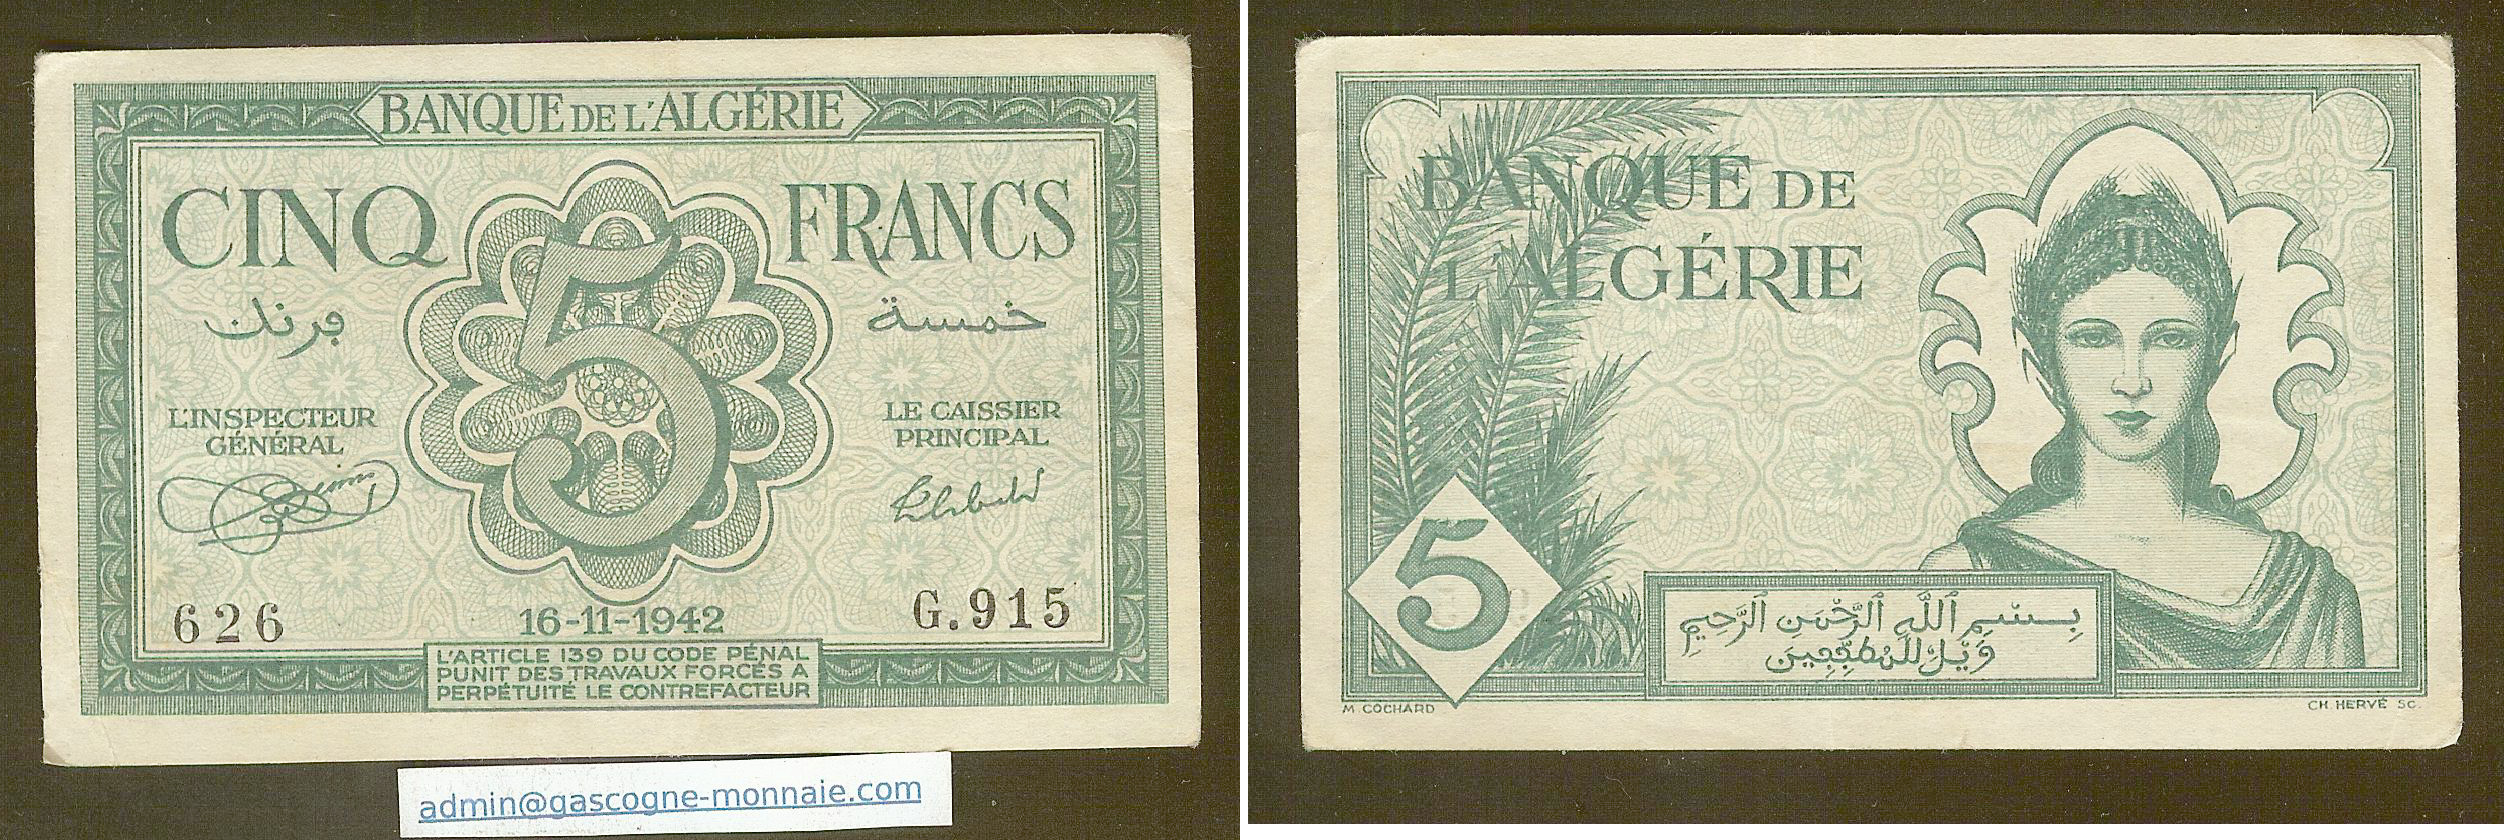 Algeria 5 francs 16.11.1942 aEF